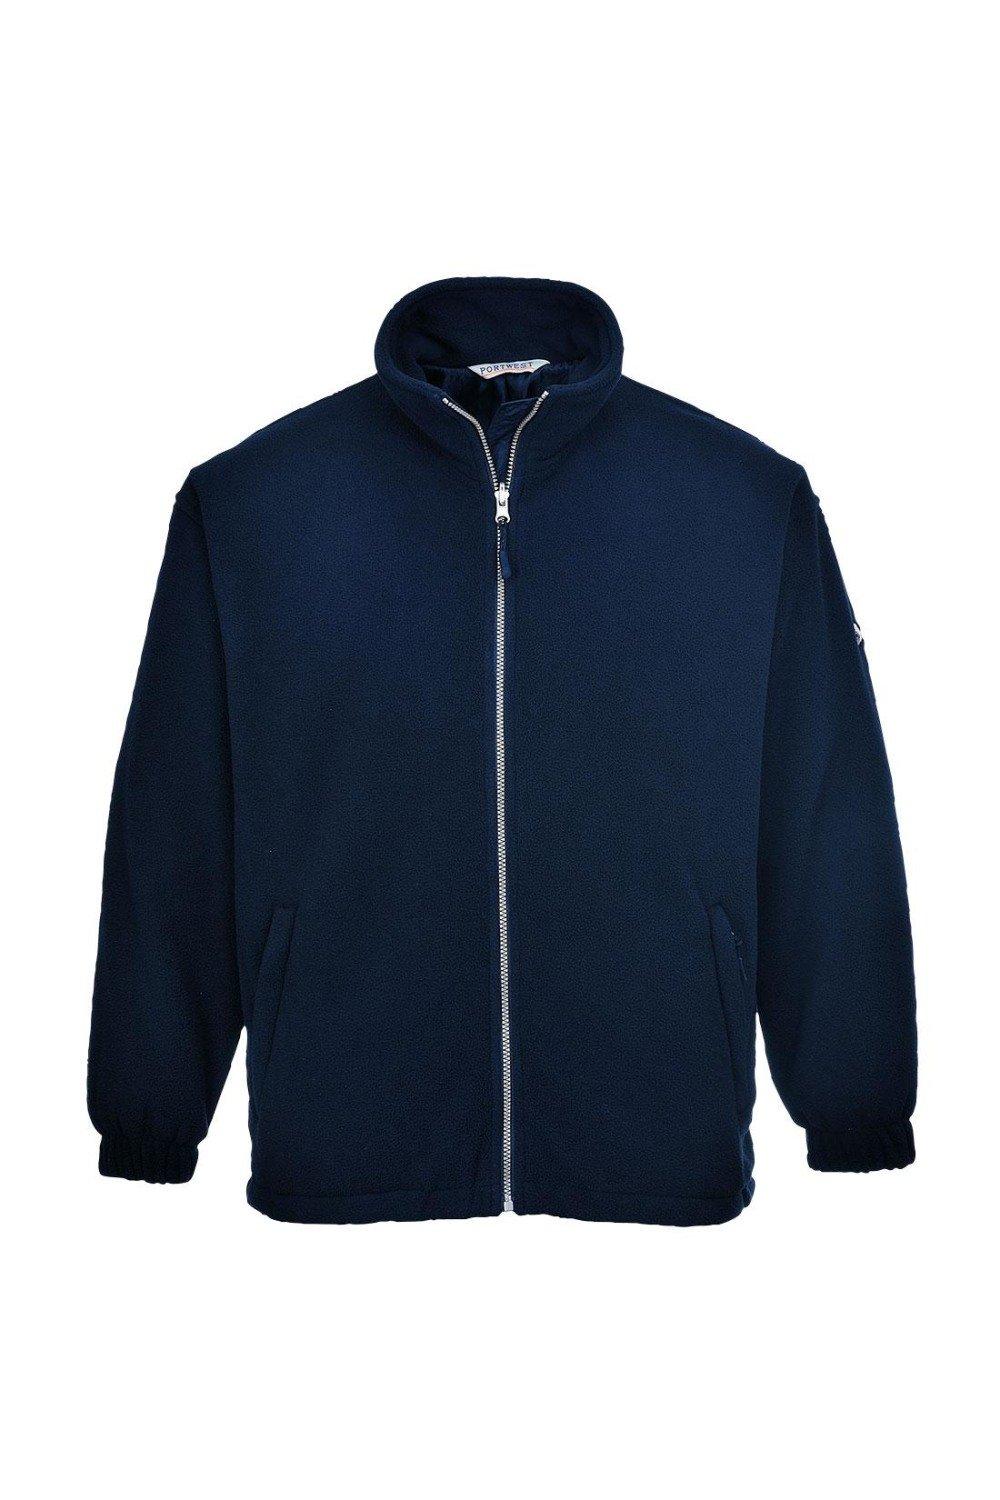 Ветрозащитная флисовая куртка Portwest, темно-синий